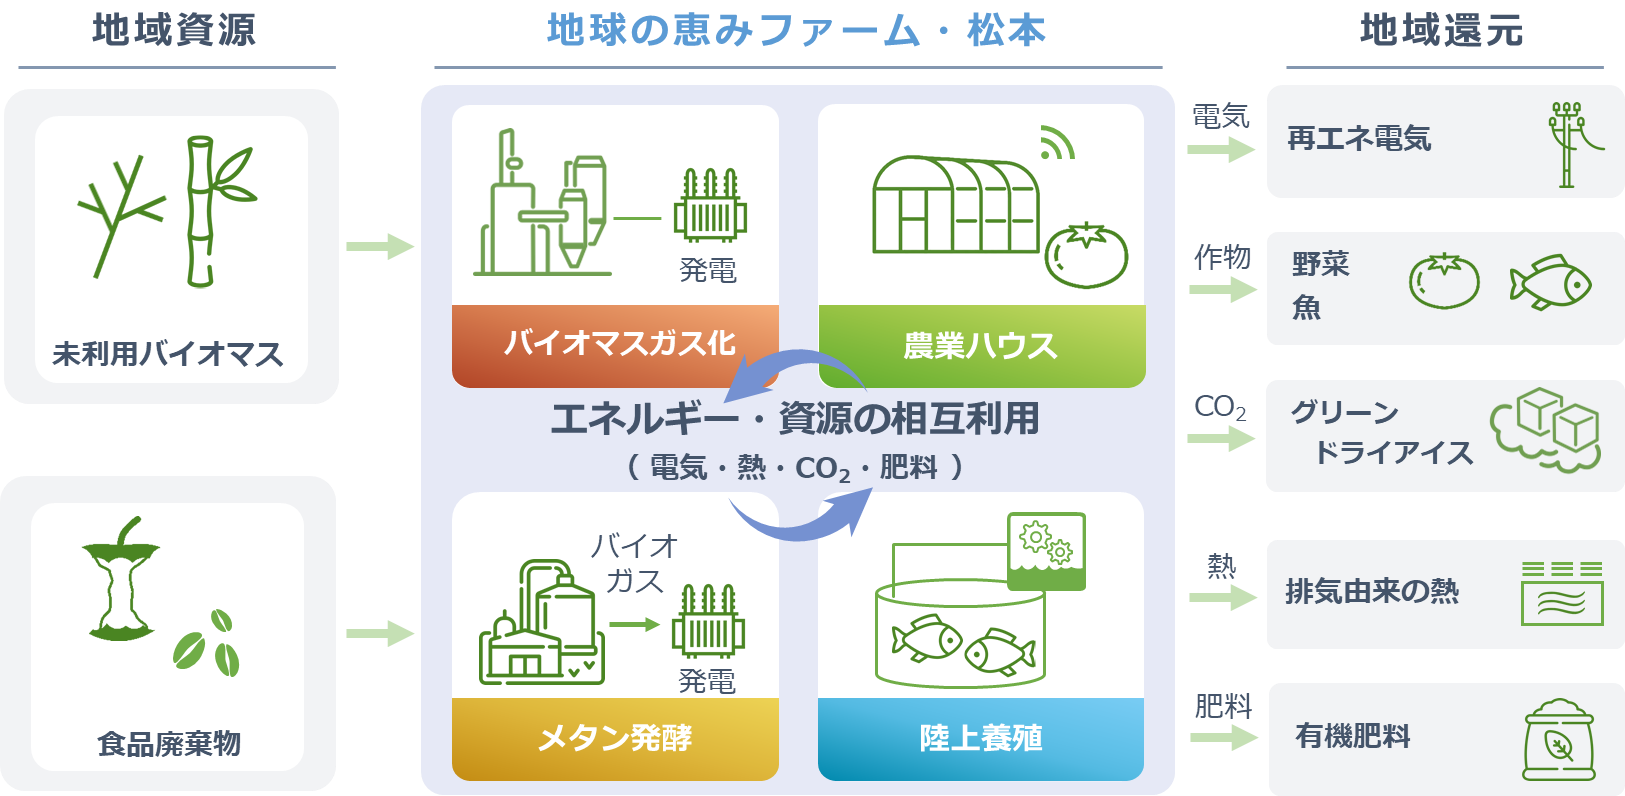 「地球の恵みファーム・松本」の地産地消エネルギーによる資源循環モデル